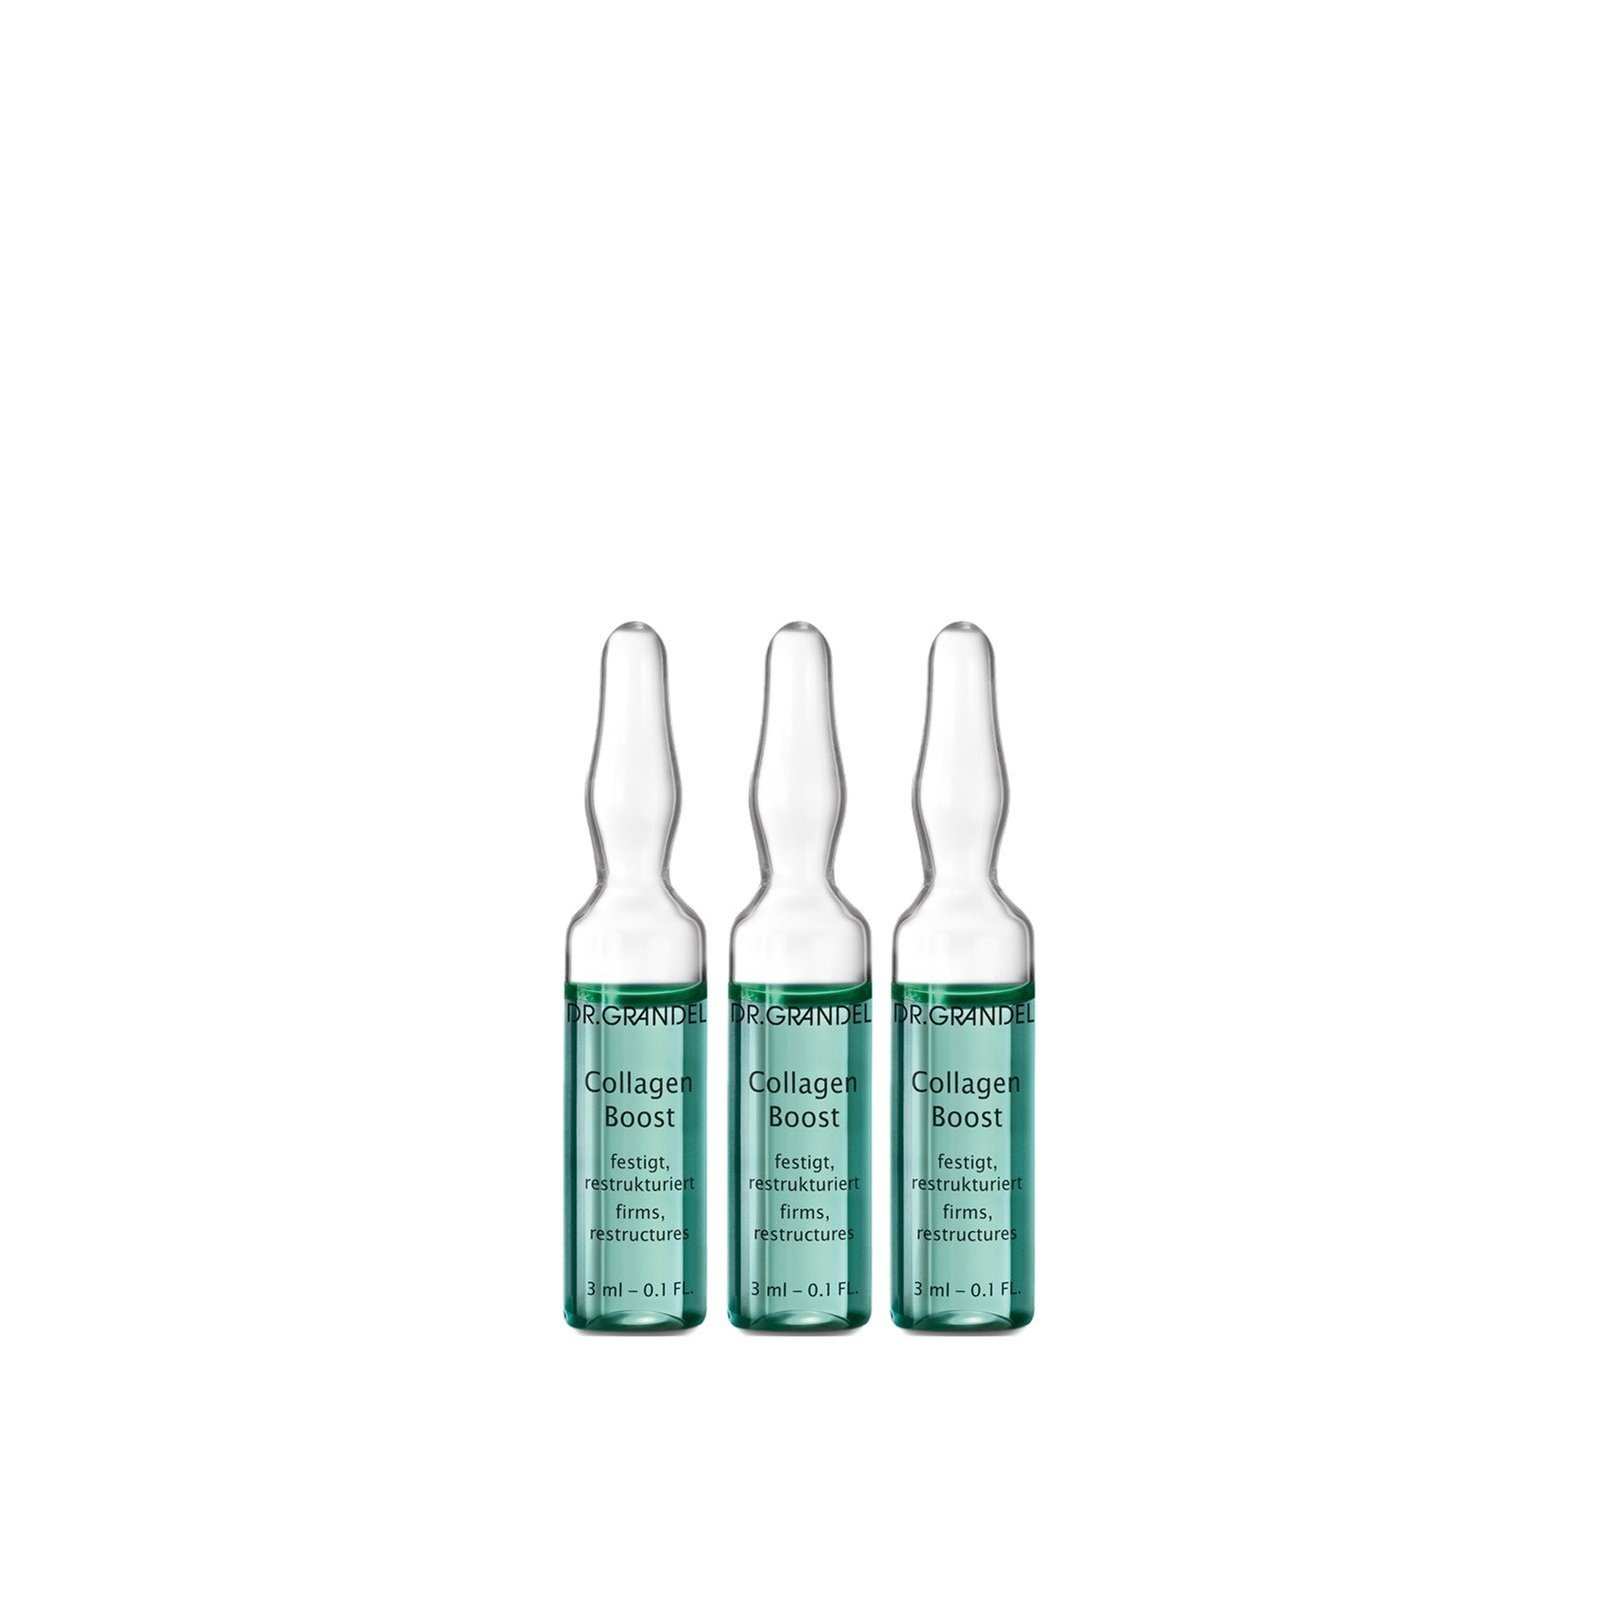 DR. GRANDEL Collagen Boost Ampoule 3x3ml (3x0.11fl oz)